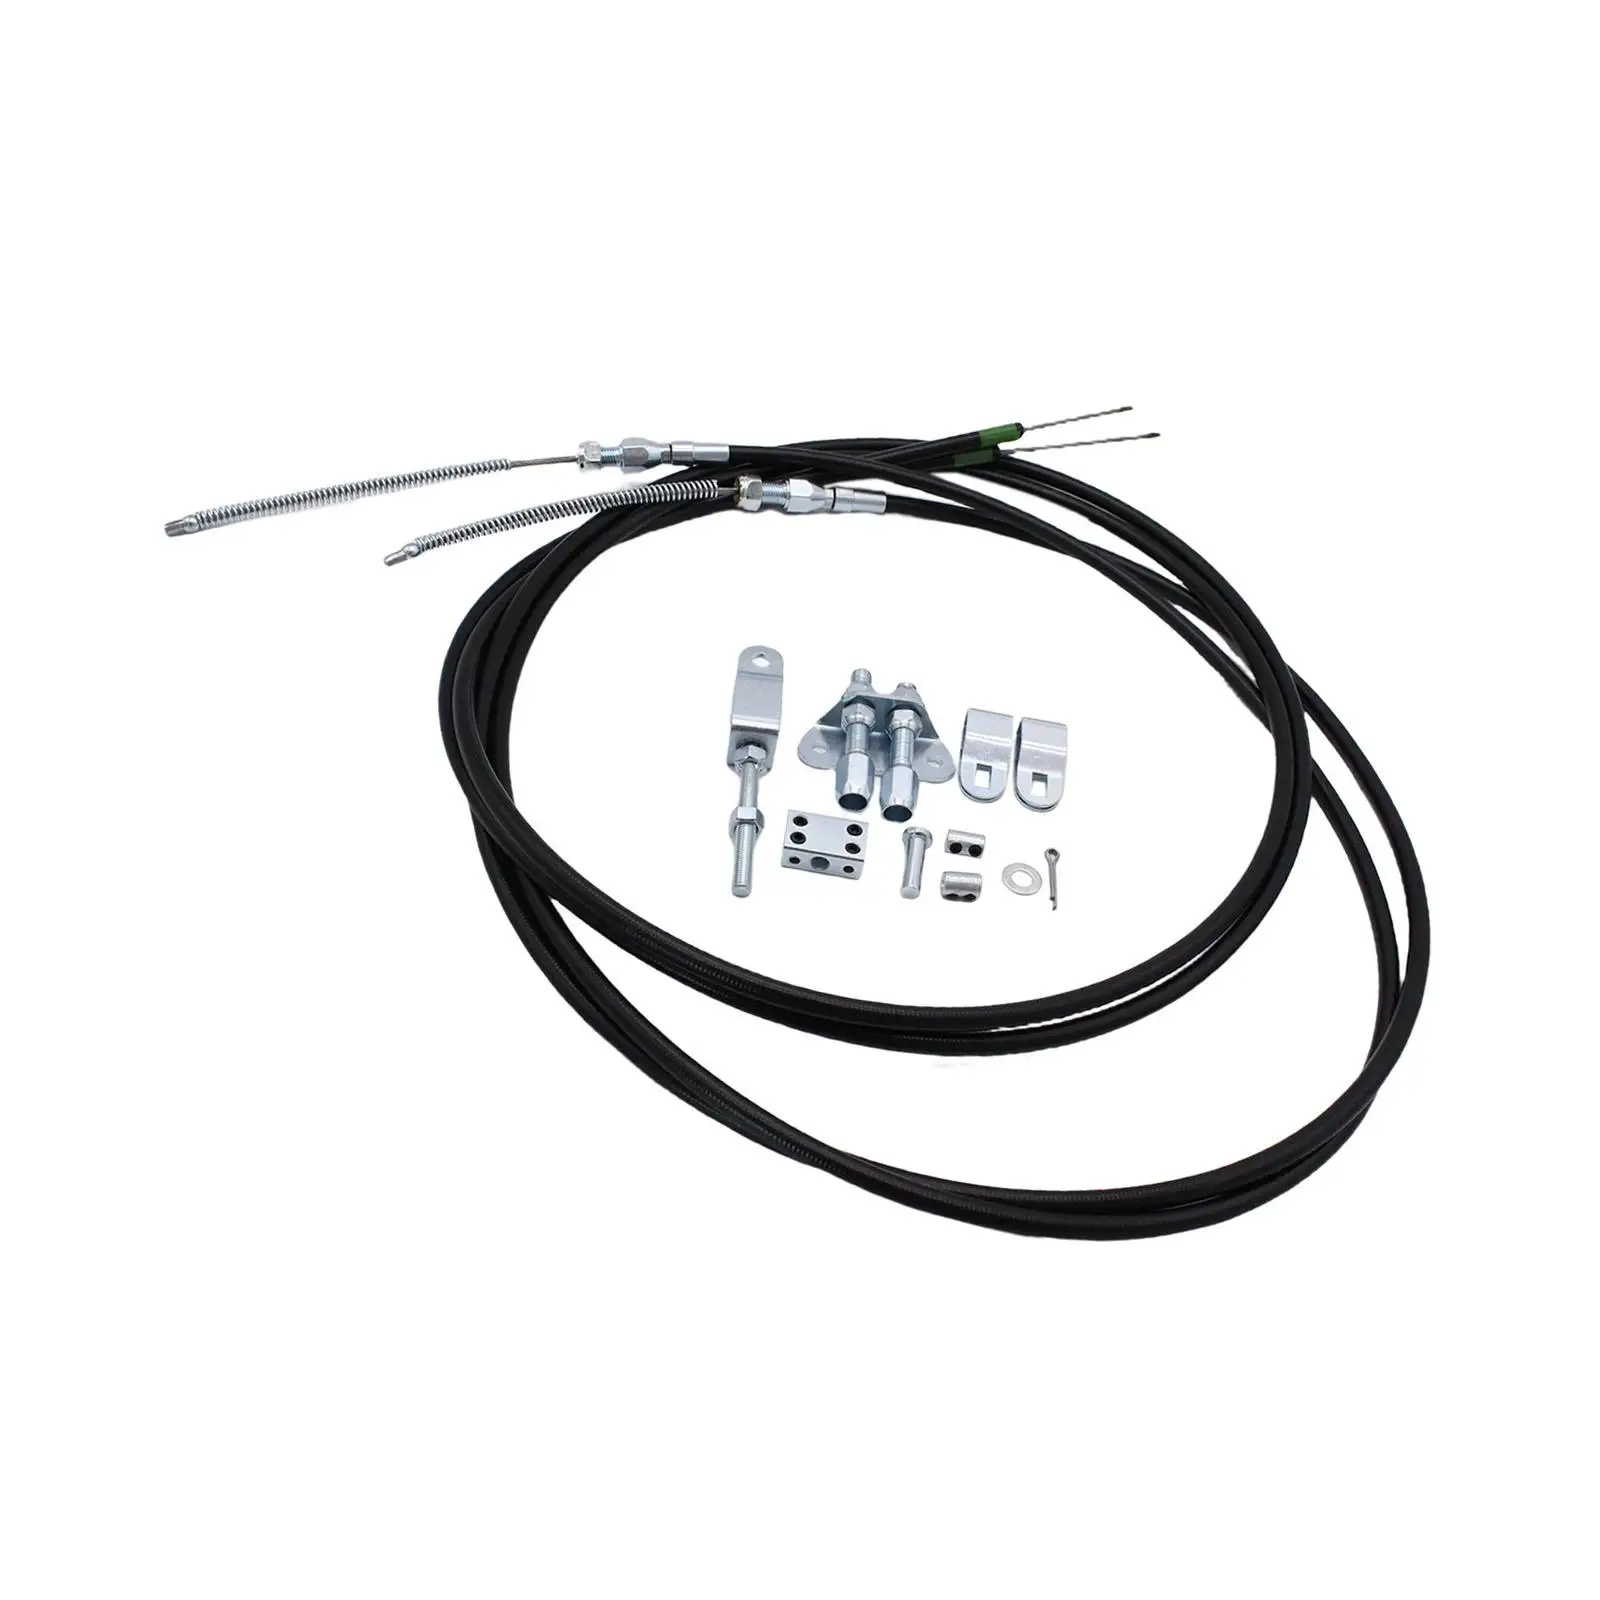 Automotive Emergency Parking Brake Cable Set 330-9371 Wear Resistant Durable